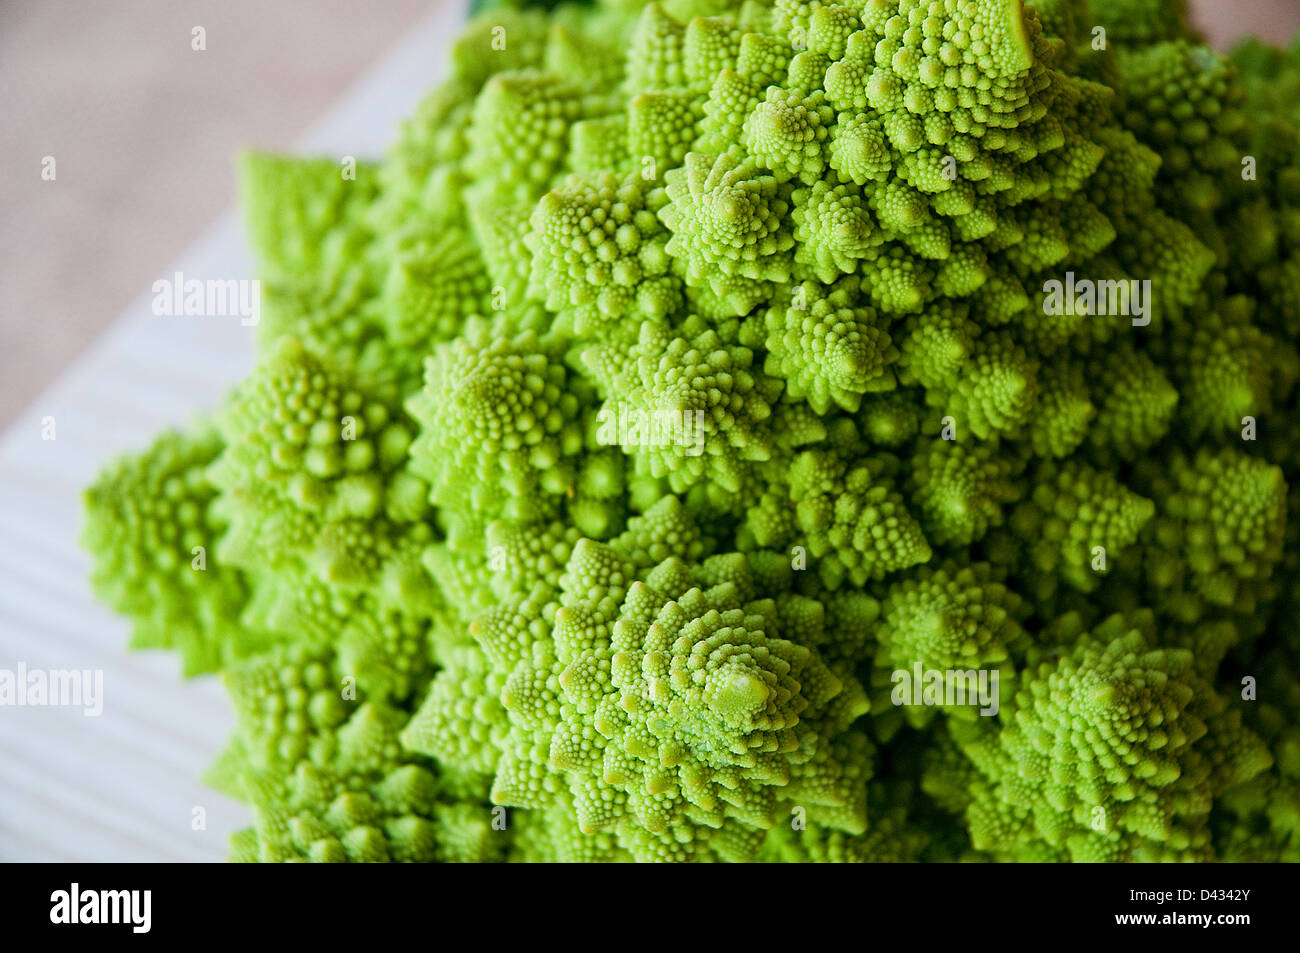 Romanesco broccoli. Close view. Stock Photo